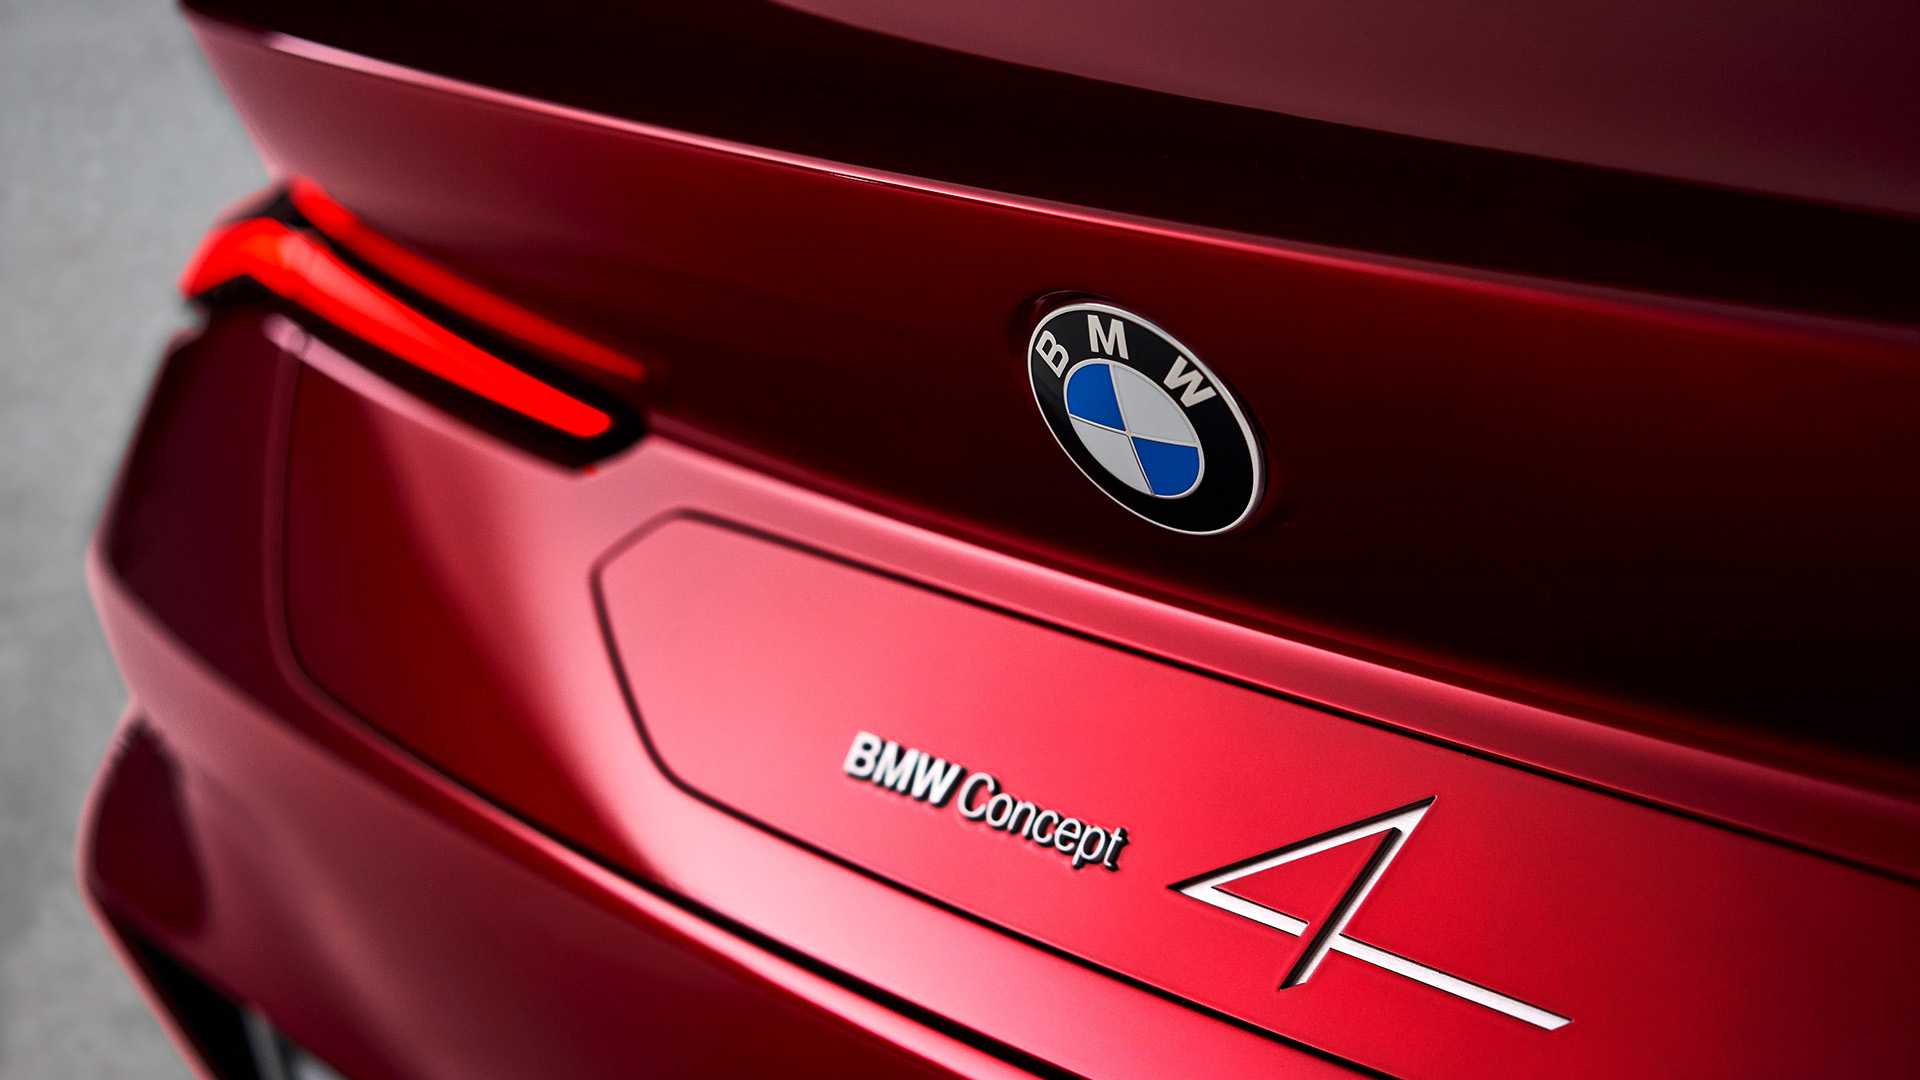 BMW: людям нравятся огромные решетки машин, этого, новых, Хейнрих, руководителей проекта, X7 не, слишком, согласуется, одного, регулярно, встречающейся, критикой, огромных, заявление, ноздрей, баварских, Баварцы, зависит, оговорился, броскими